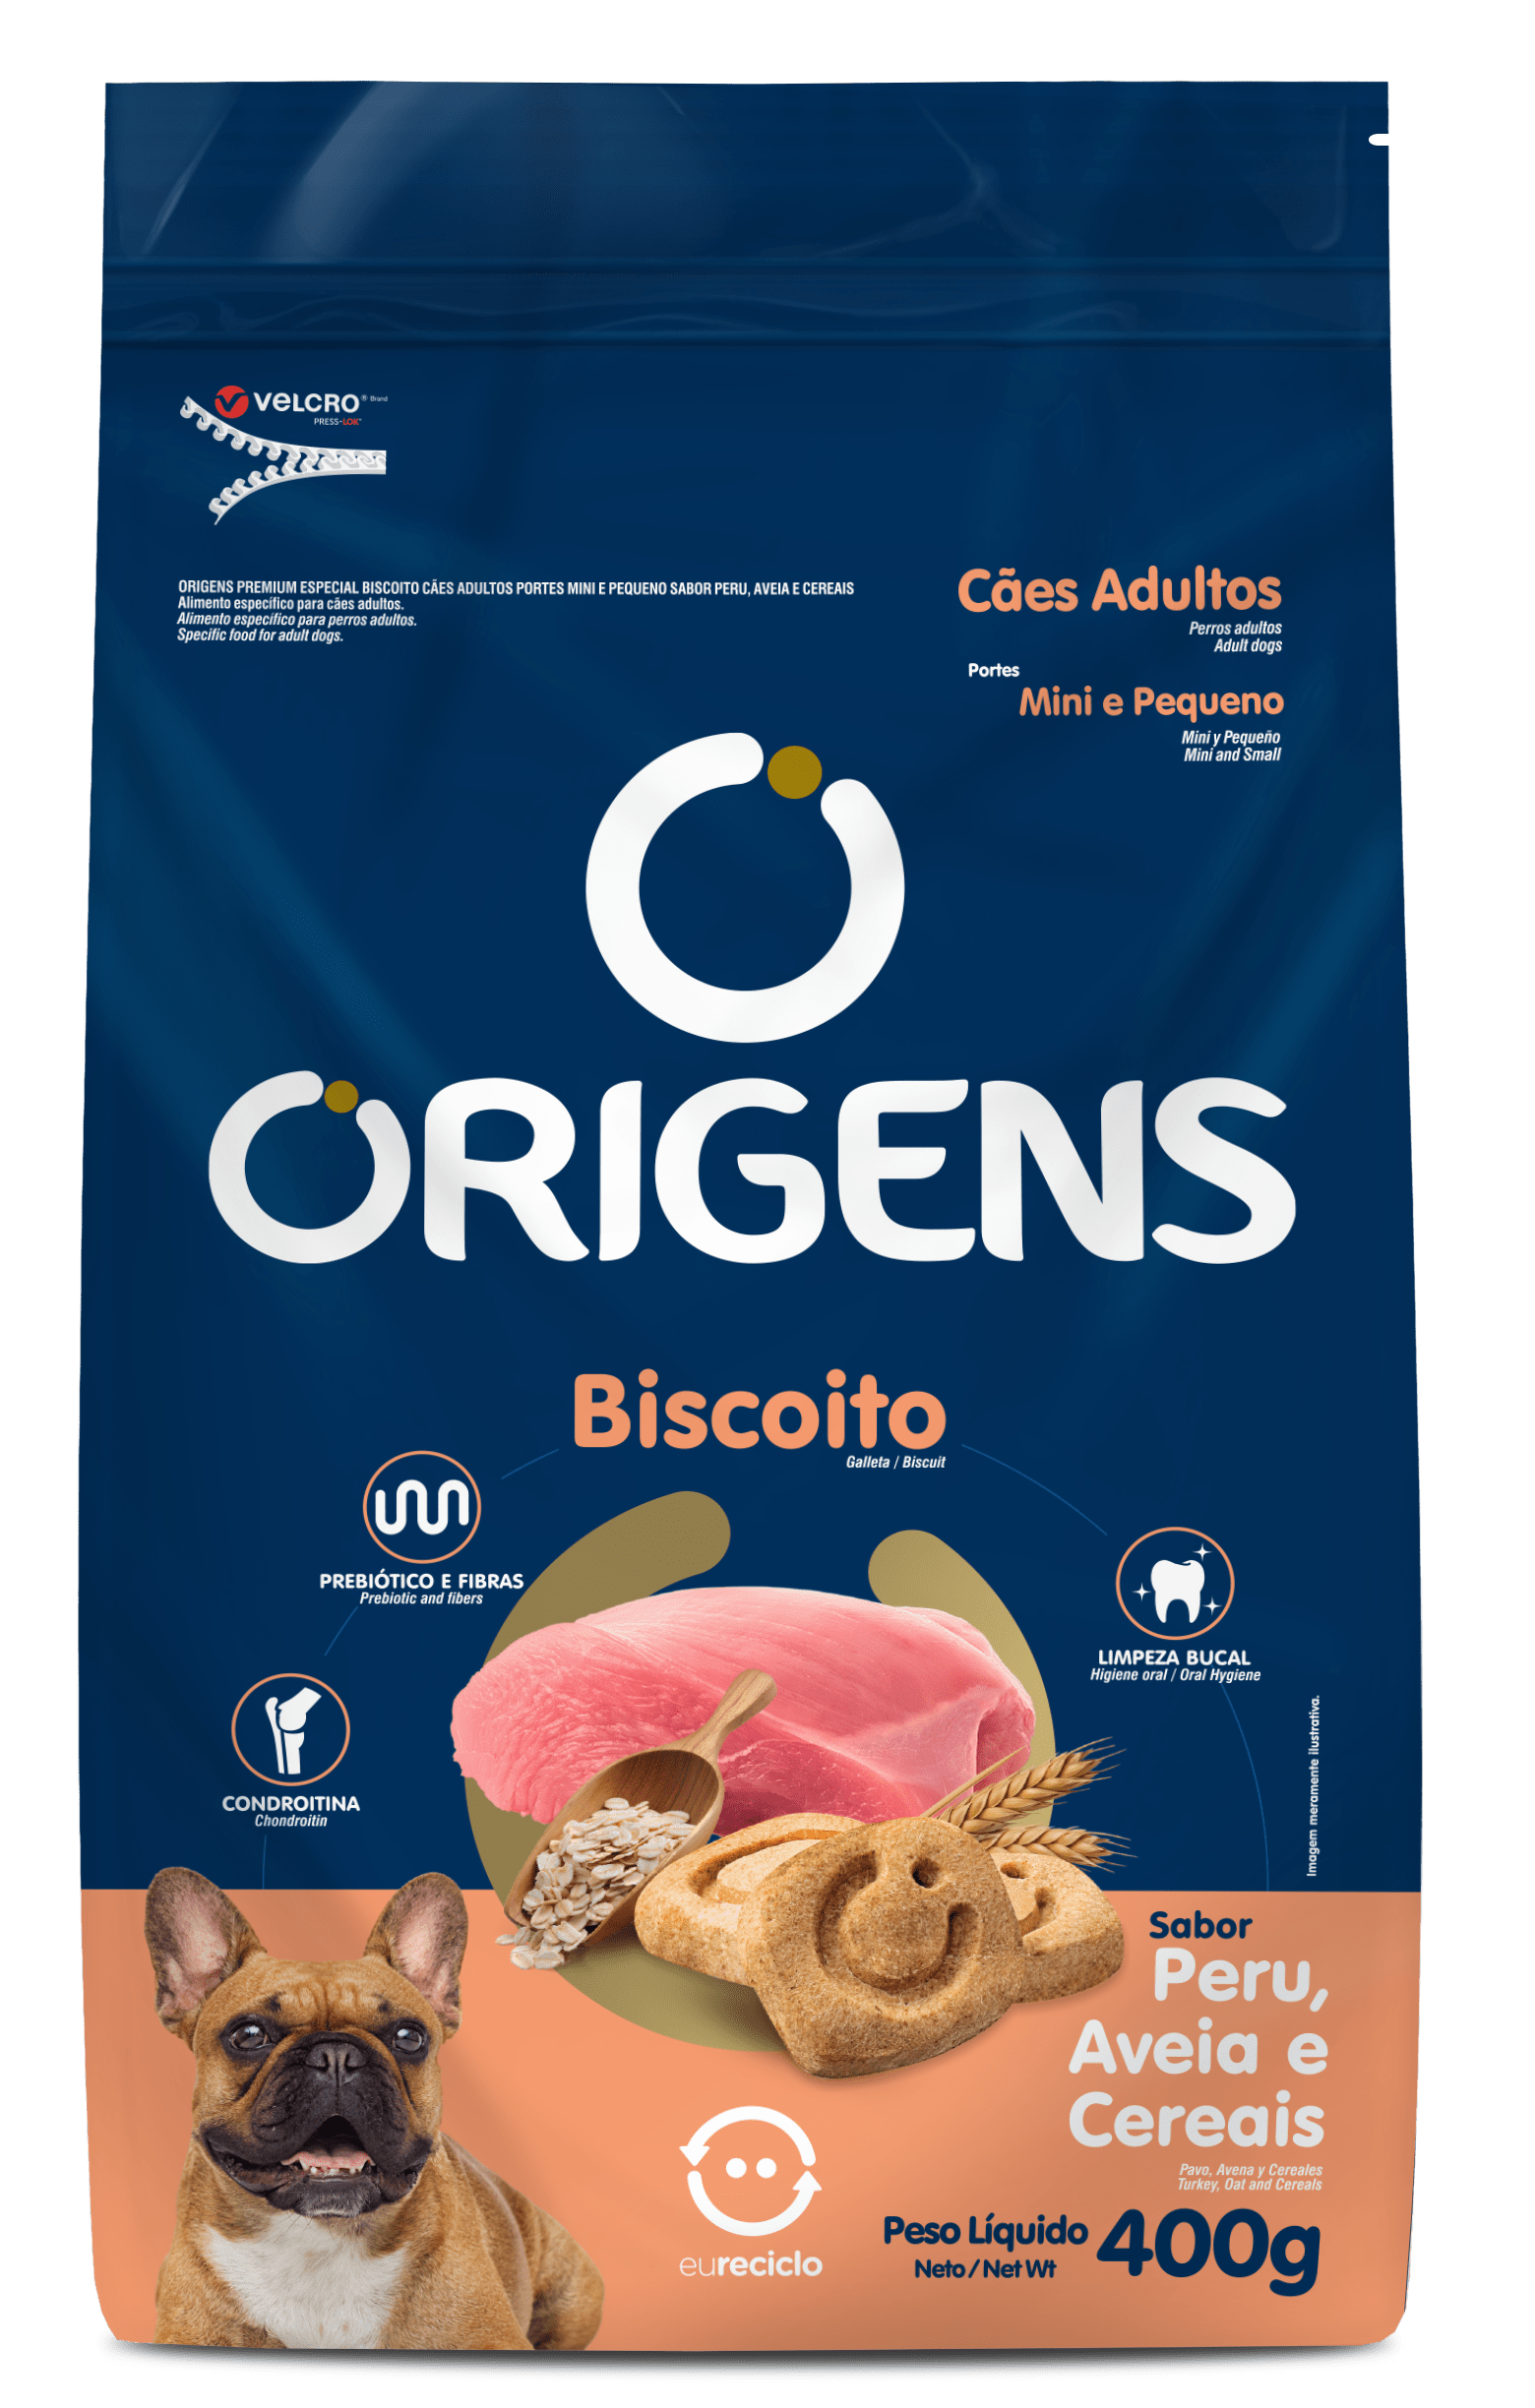 Origens Premium Especial Biscoito Cães Adultos Portes Mini E Pequeno Sabor Peru, Aveia e Cereais